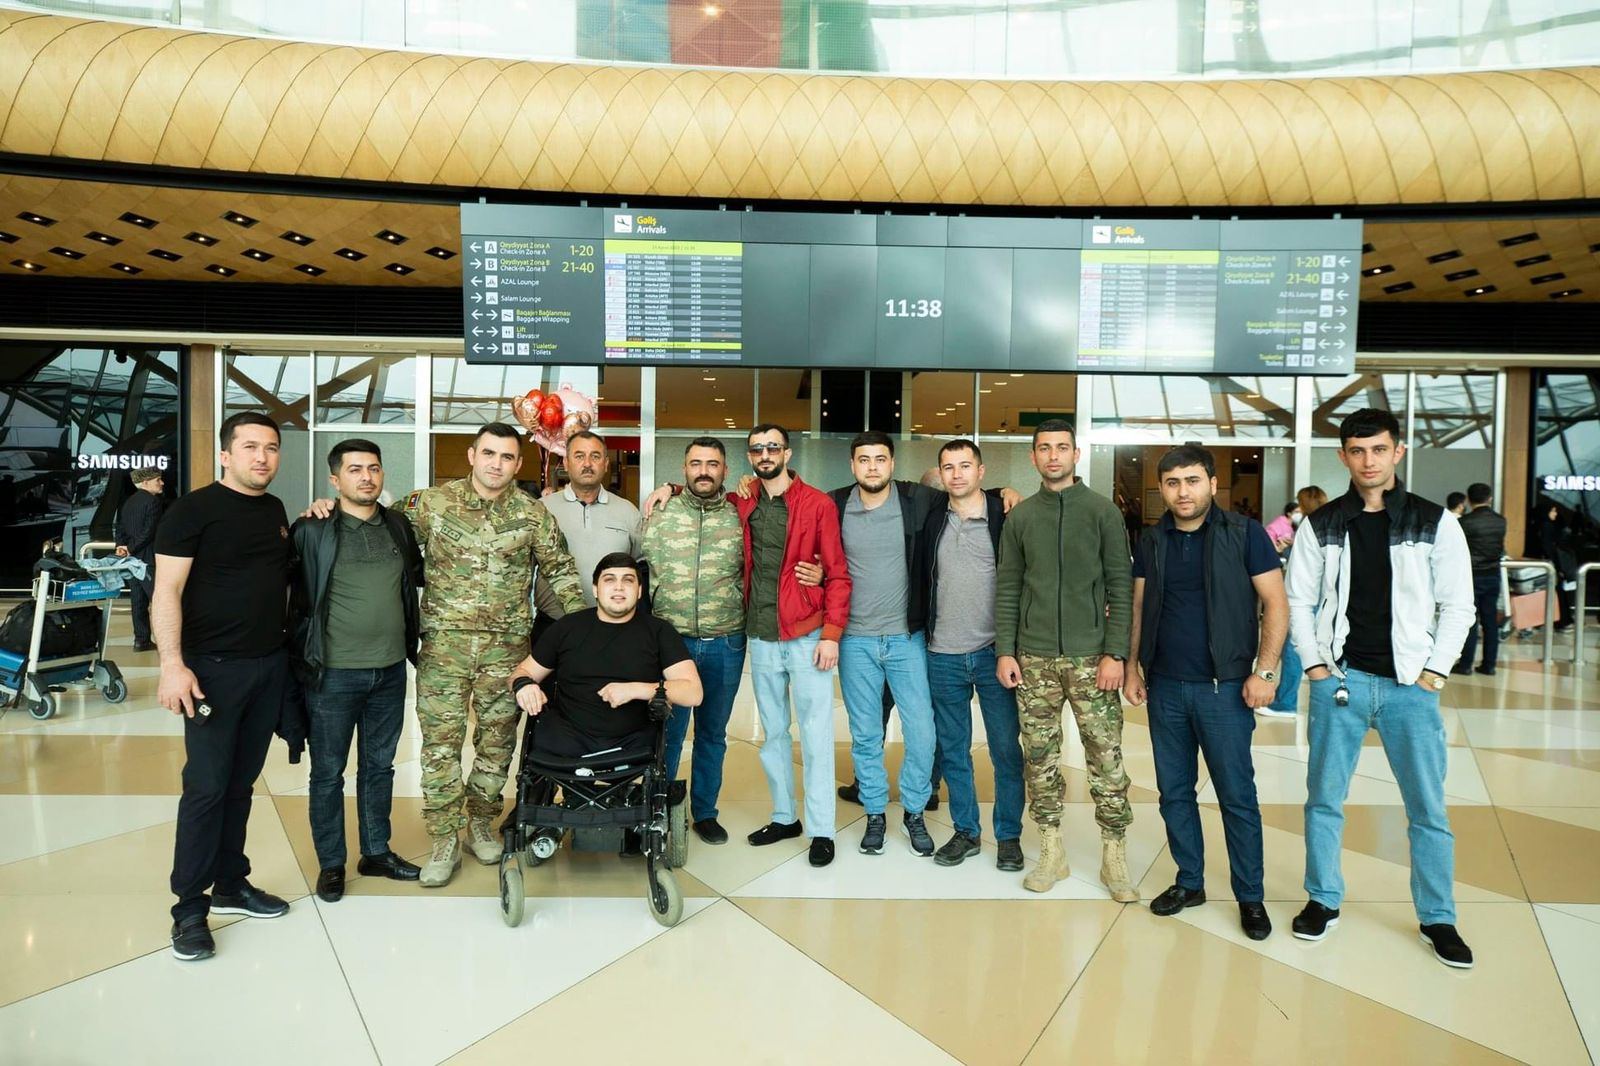 Еще два участника Отечественной войны Азербайджана вернулись на родину после лечения в Турции (ФОТО)